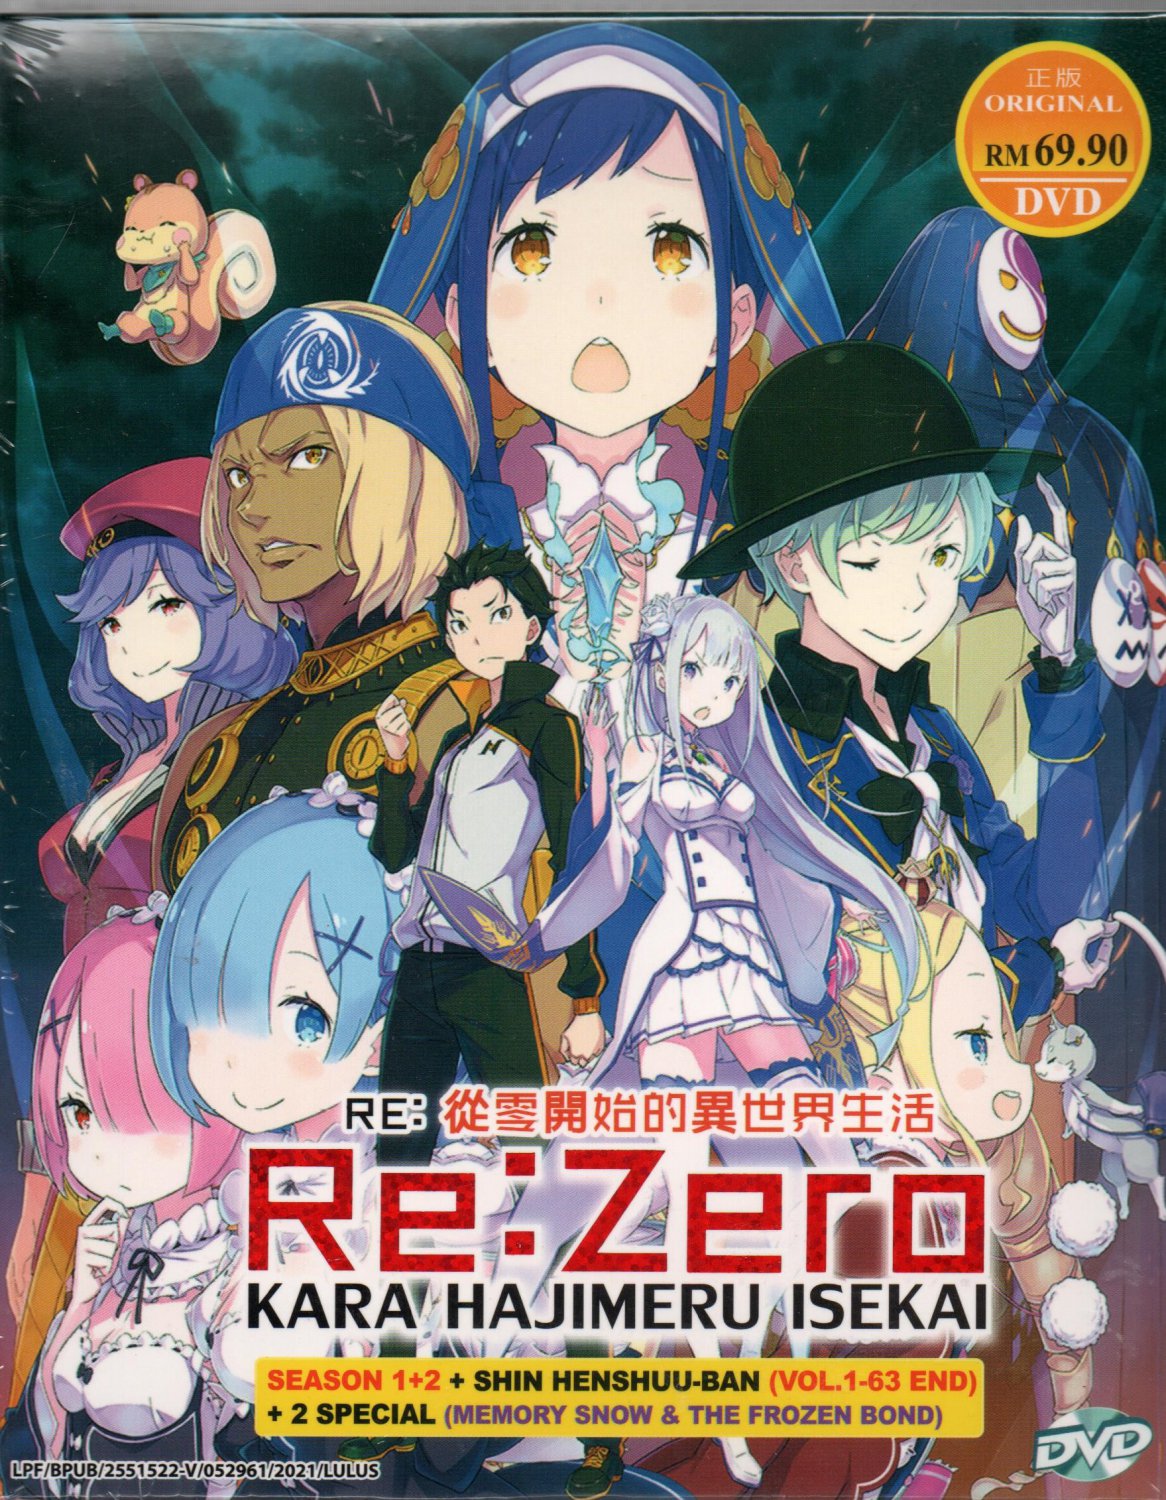 Anime DVD Re:Zero Kara Hajimeru Isekai Season 1+2 + Shin Henshuu-Ban + 2 Special